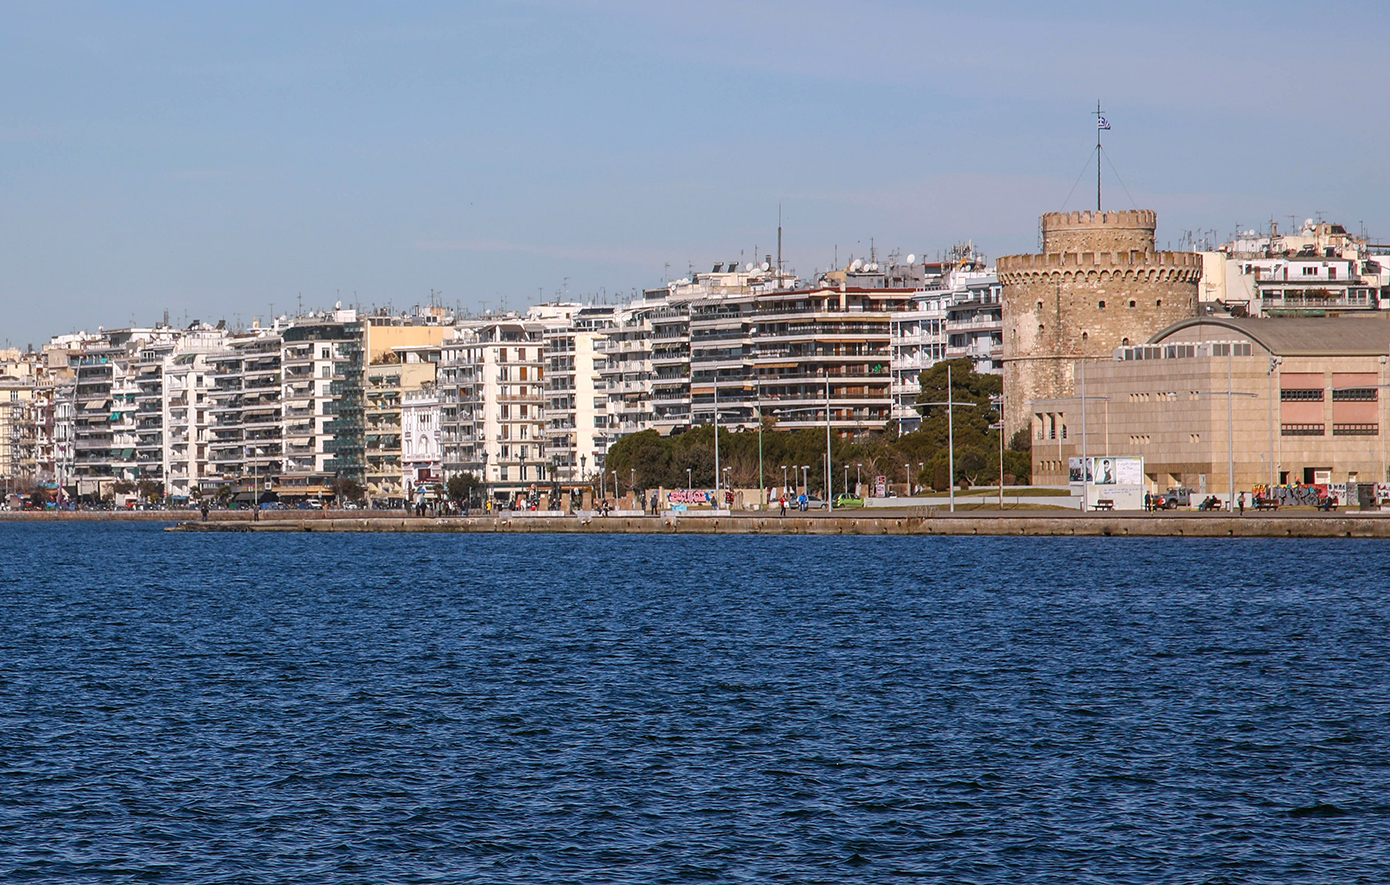 Κατέστρεψαν τις δημοτικές τουαλέτες στη Νέα Παράλια Θεσσαλονίκης – Ο δήμος κατέθεσε μήνυση